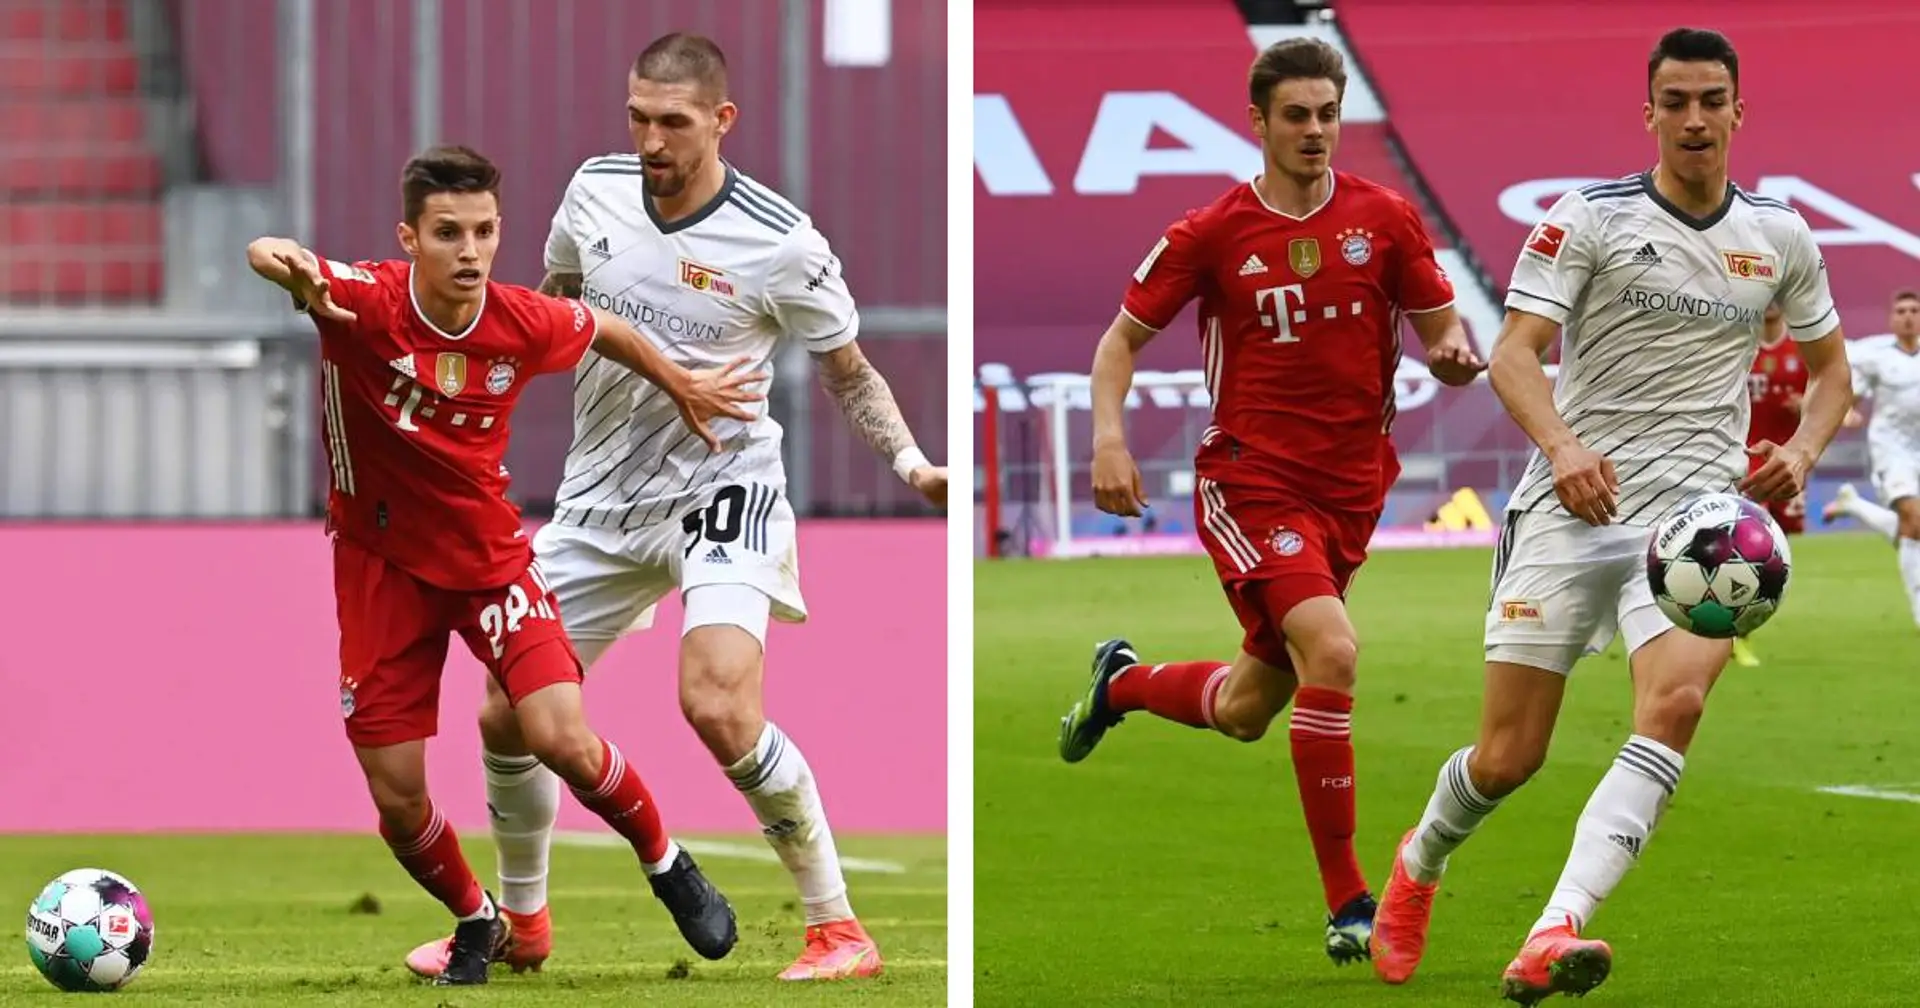 "Alle waren für den Sieg eingestellt": Bayern-Fan lobt die Mentalität von Stanisic, Dantas und Co.